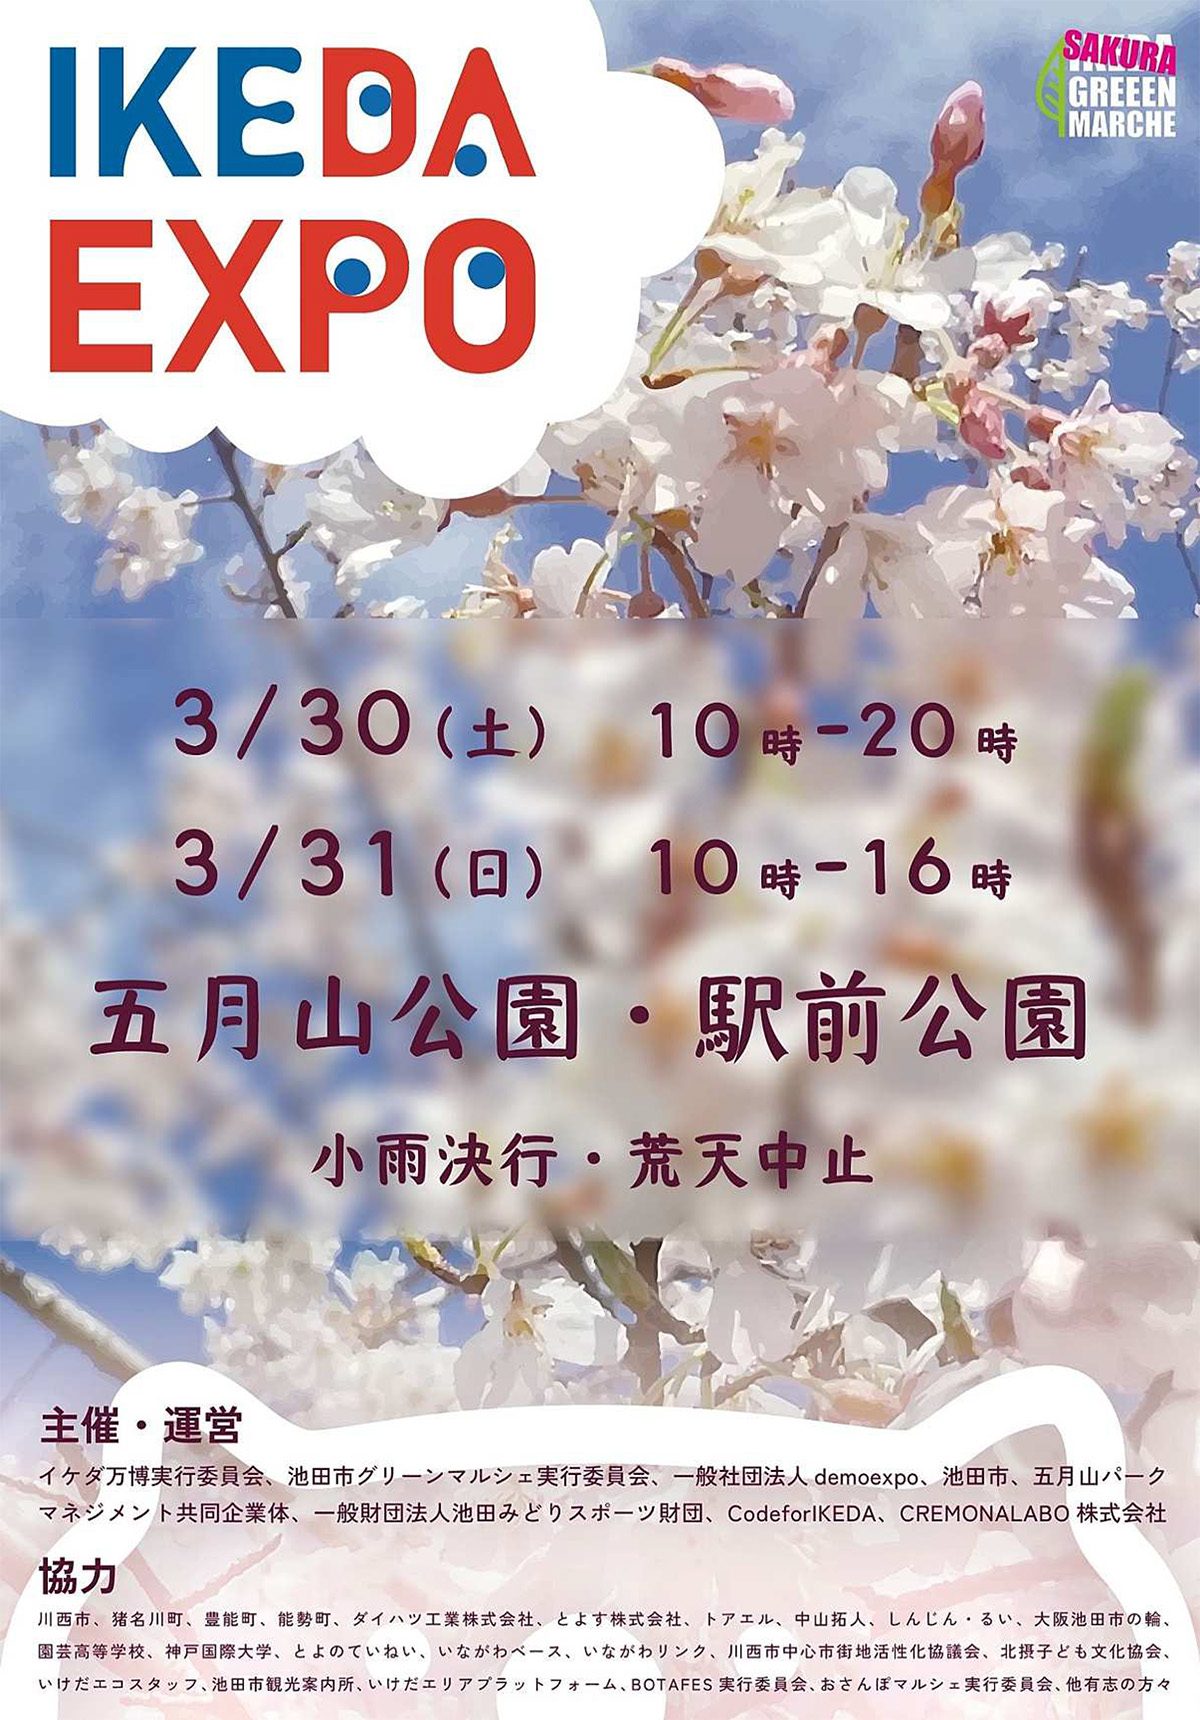 さくら満開の池田市五月山公園にて「IKEDA EXPO」を開催